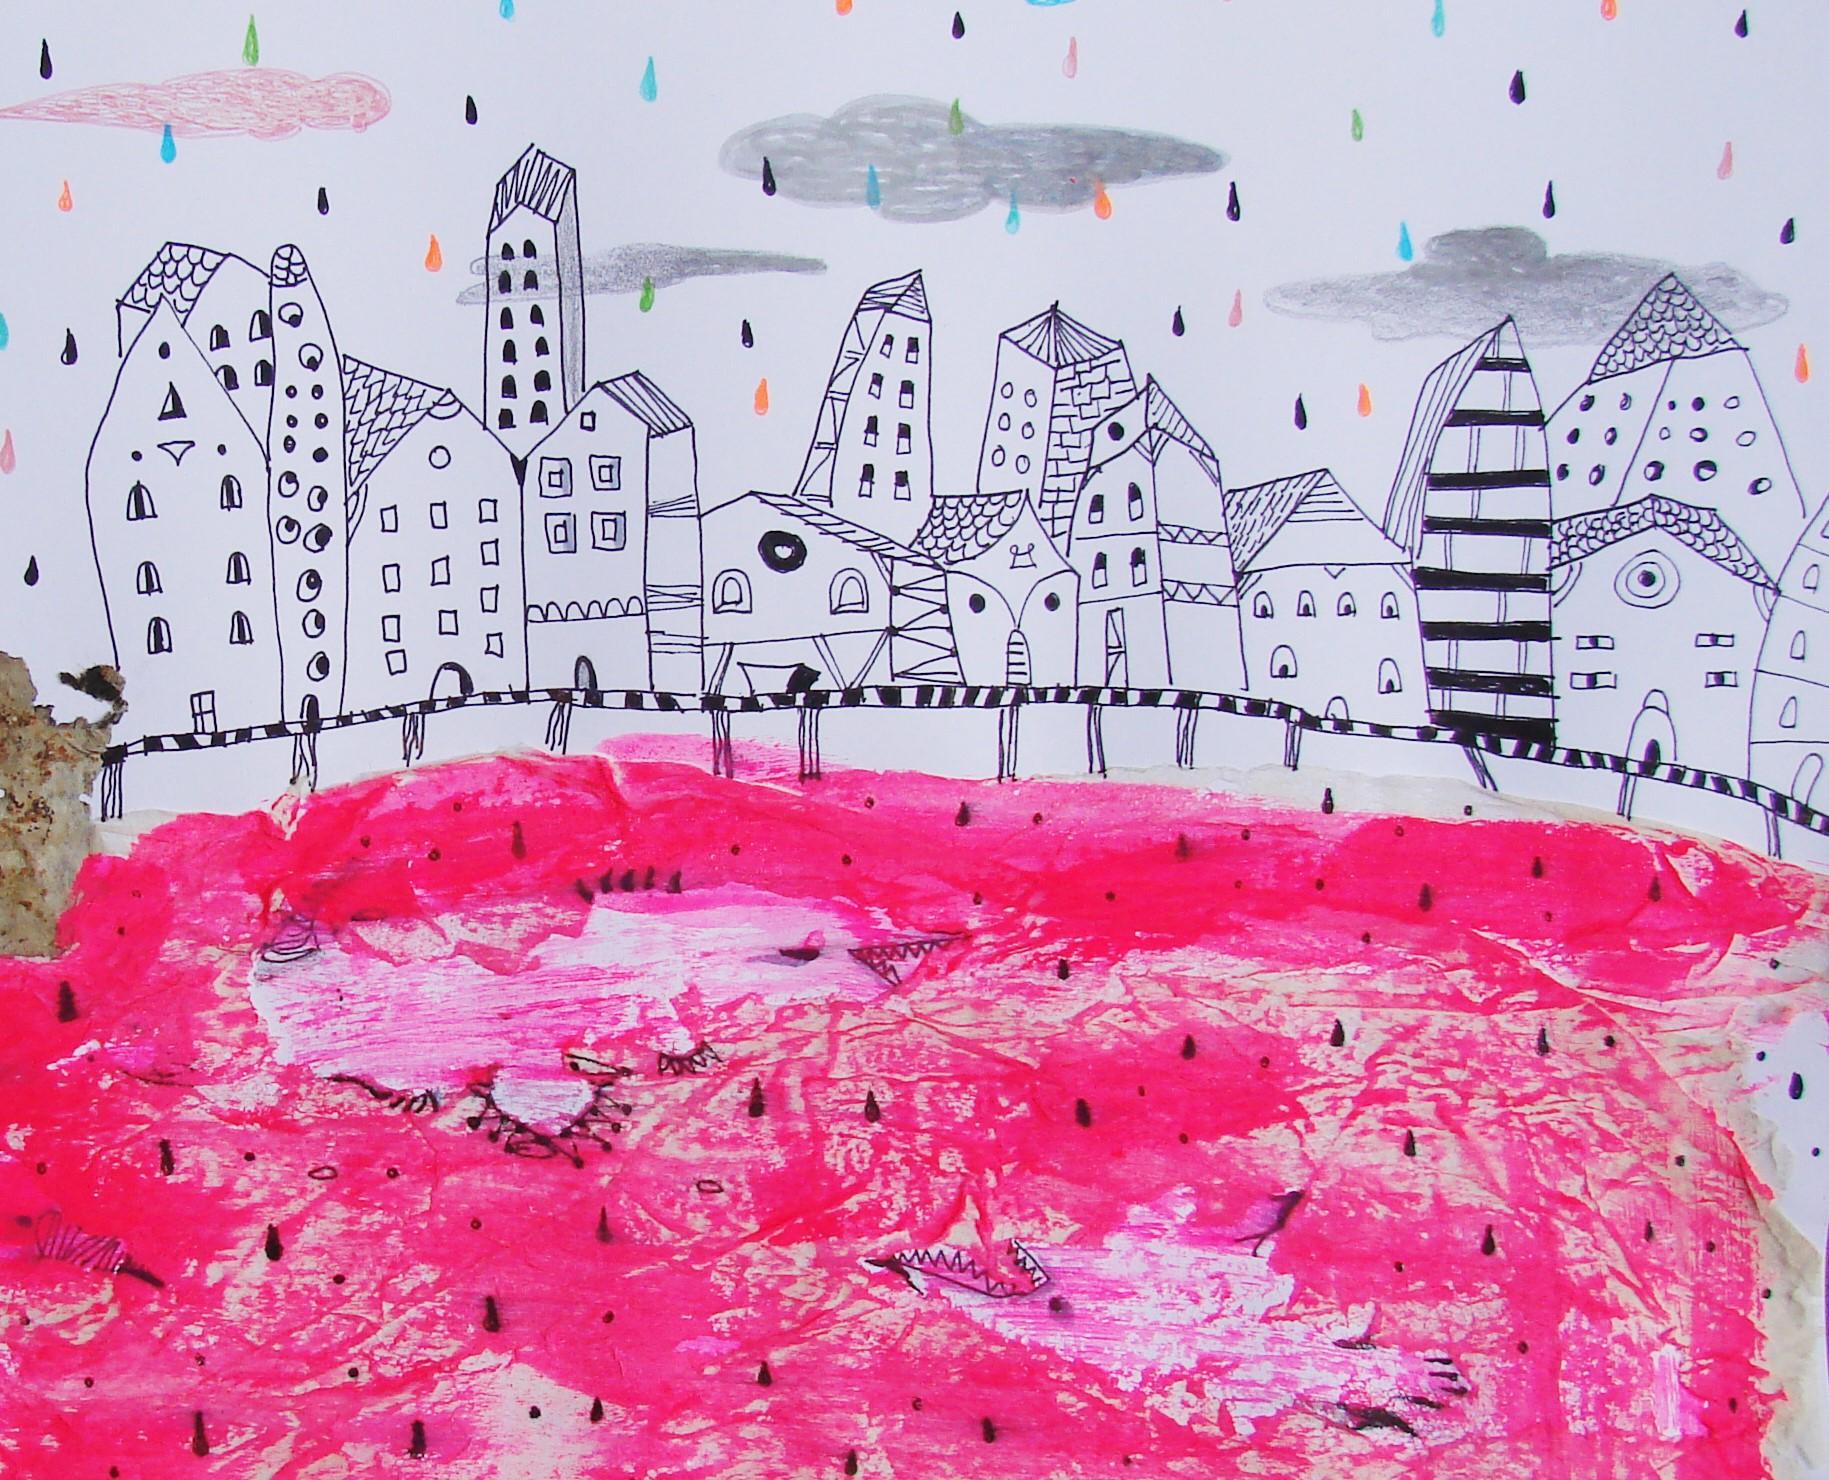 Rotes Meer - Zeitgenössisch, Zeichnung auf Papier, Rosa, traumhaft, figürlich (Violett), Animal Art, von Raluca Arnăutu